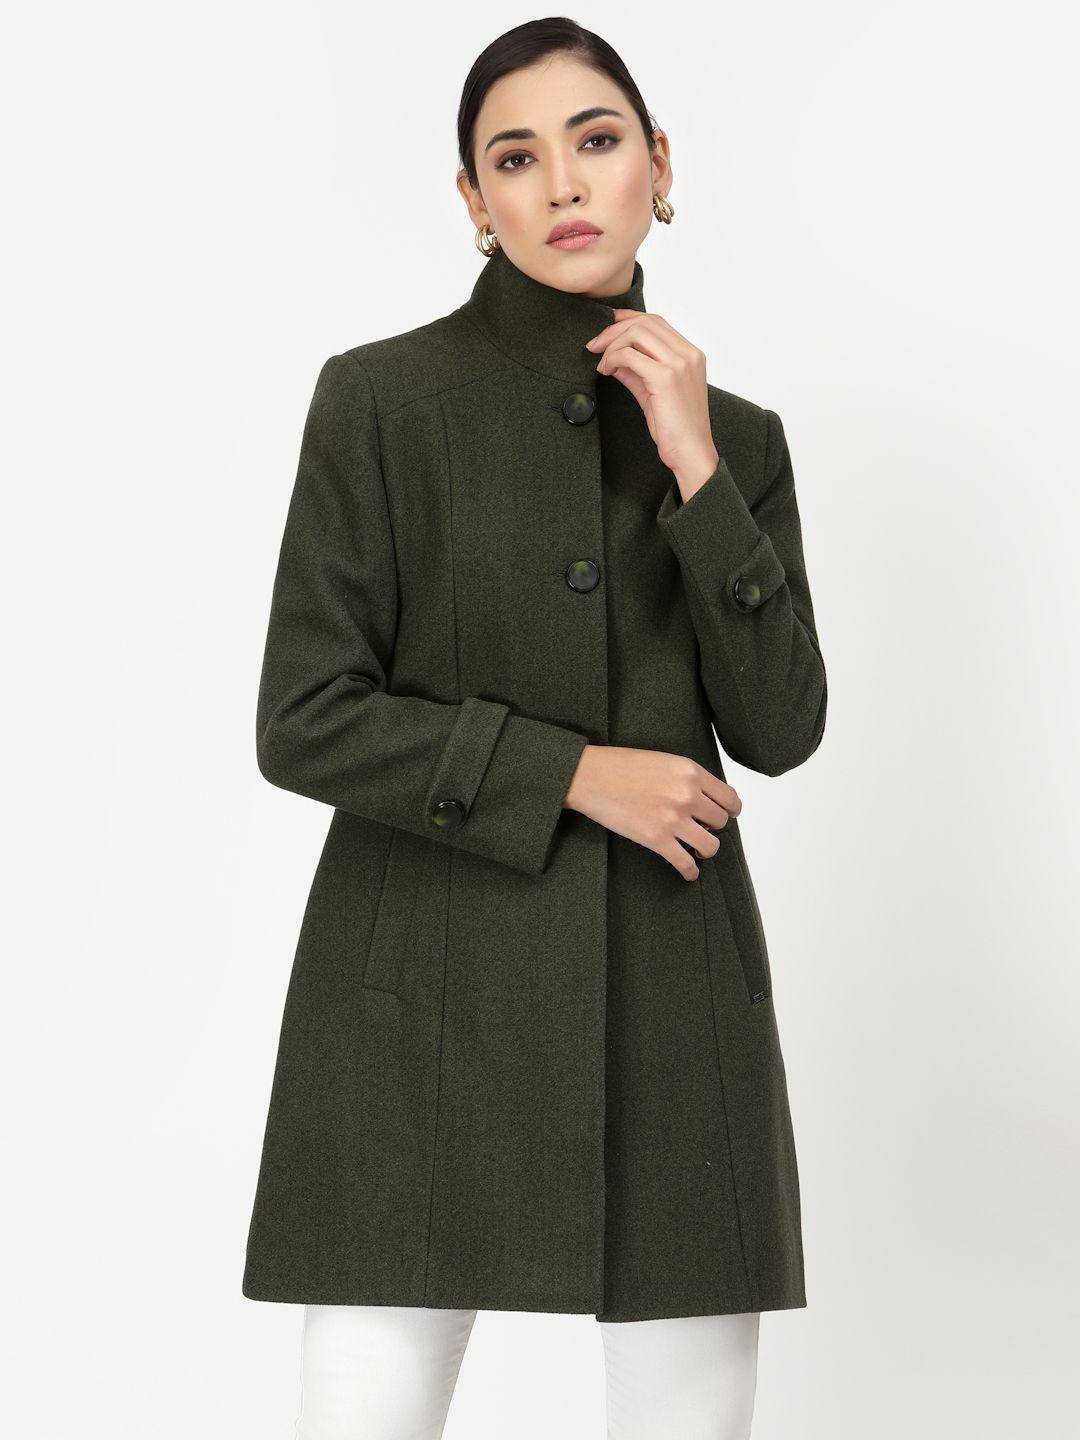 juelle women olive green longline overcoat